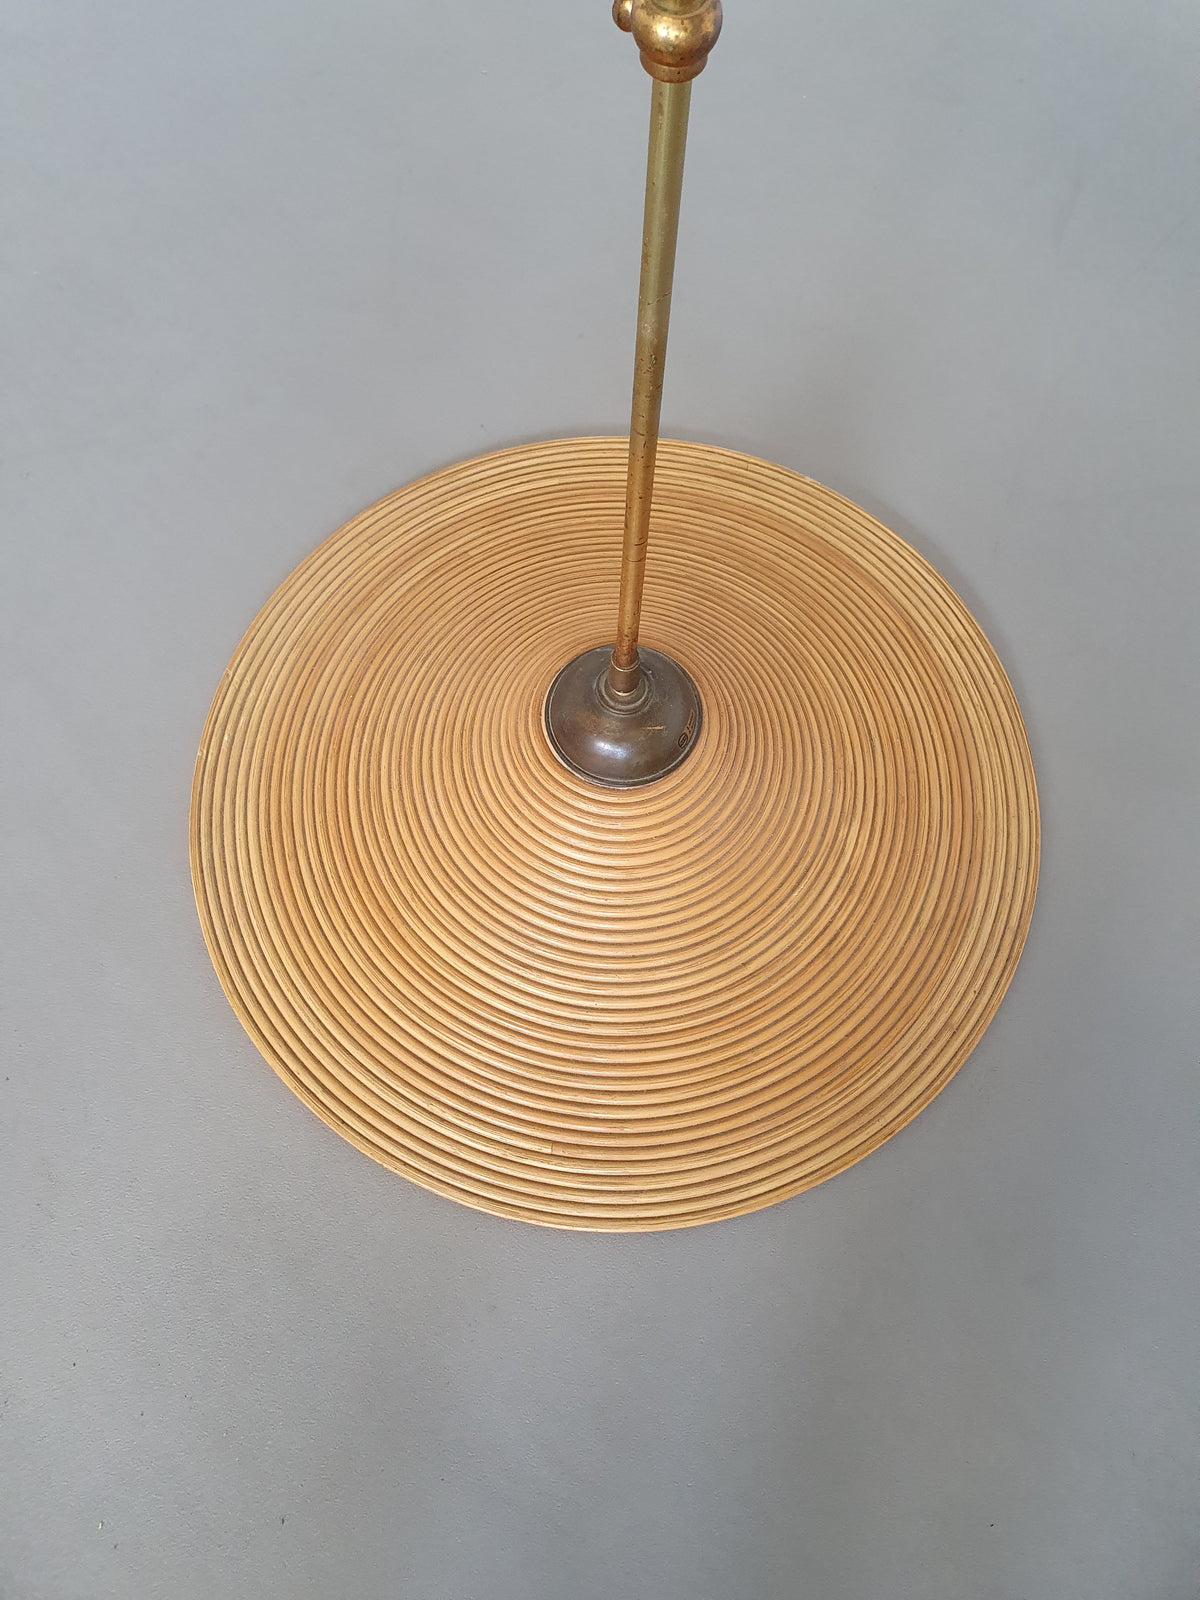 Lumi pencil reed bamboo pendant lamp 60s